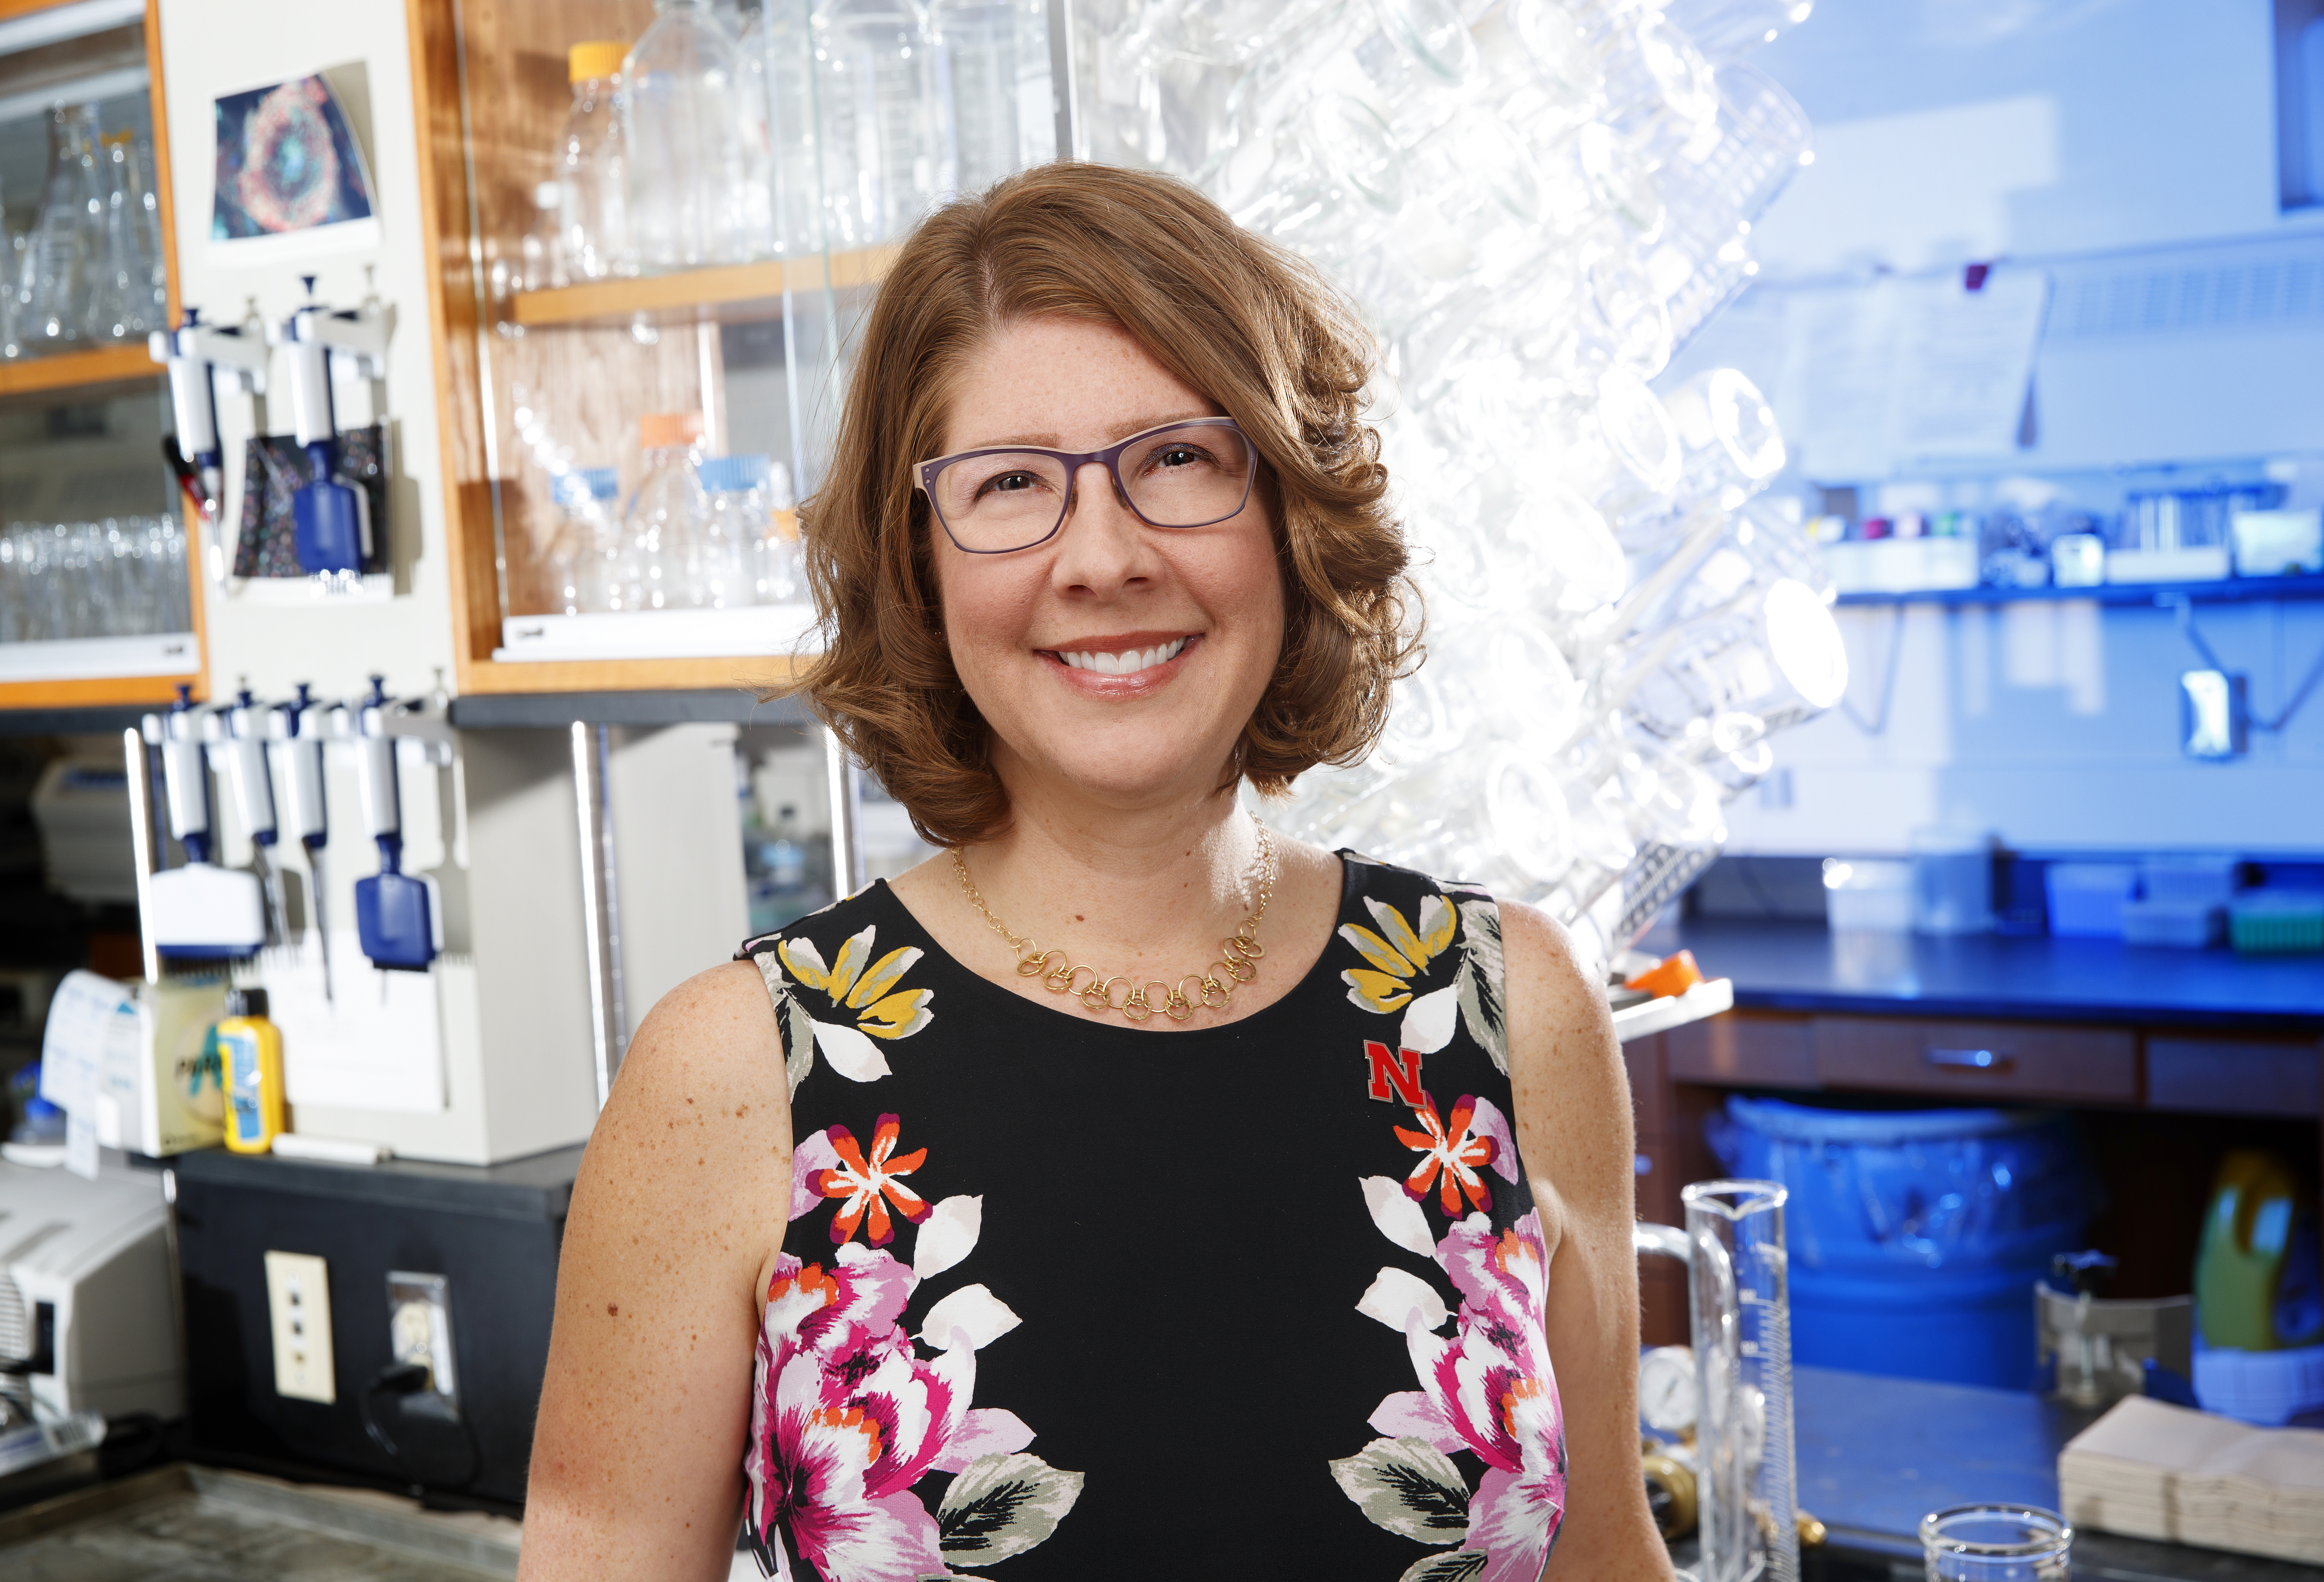 Angela Pannier's biomedical research recently garnered a prestigious NIH award.